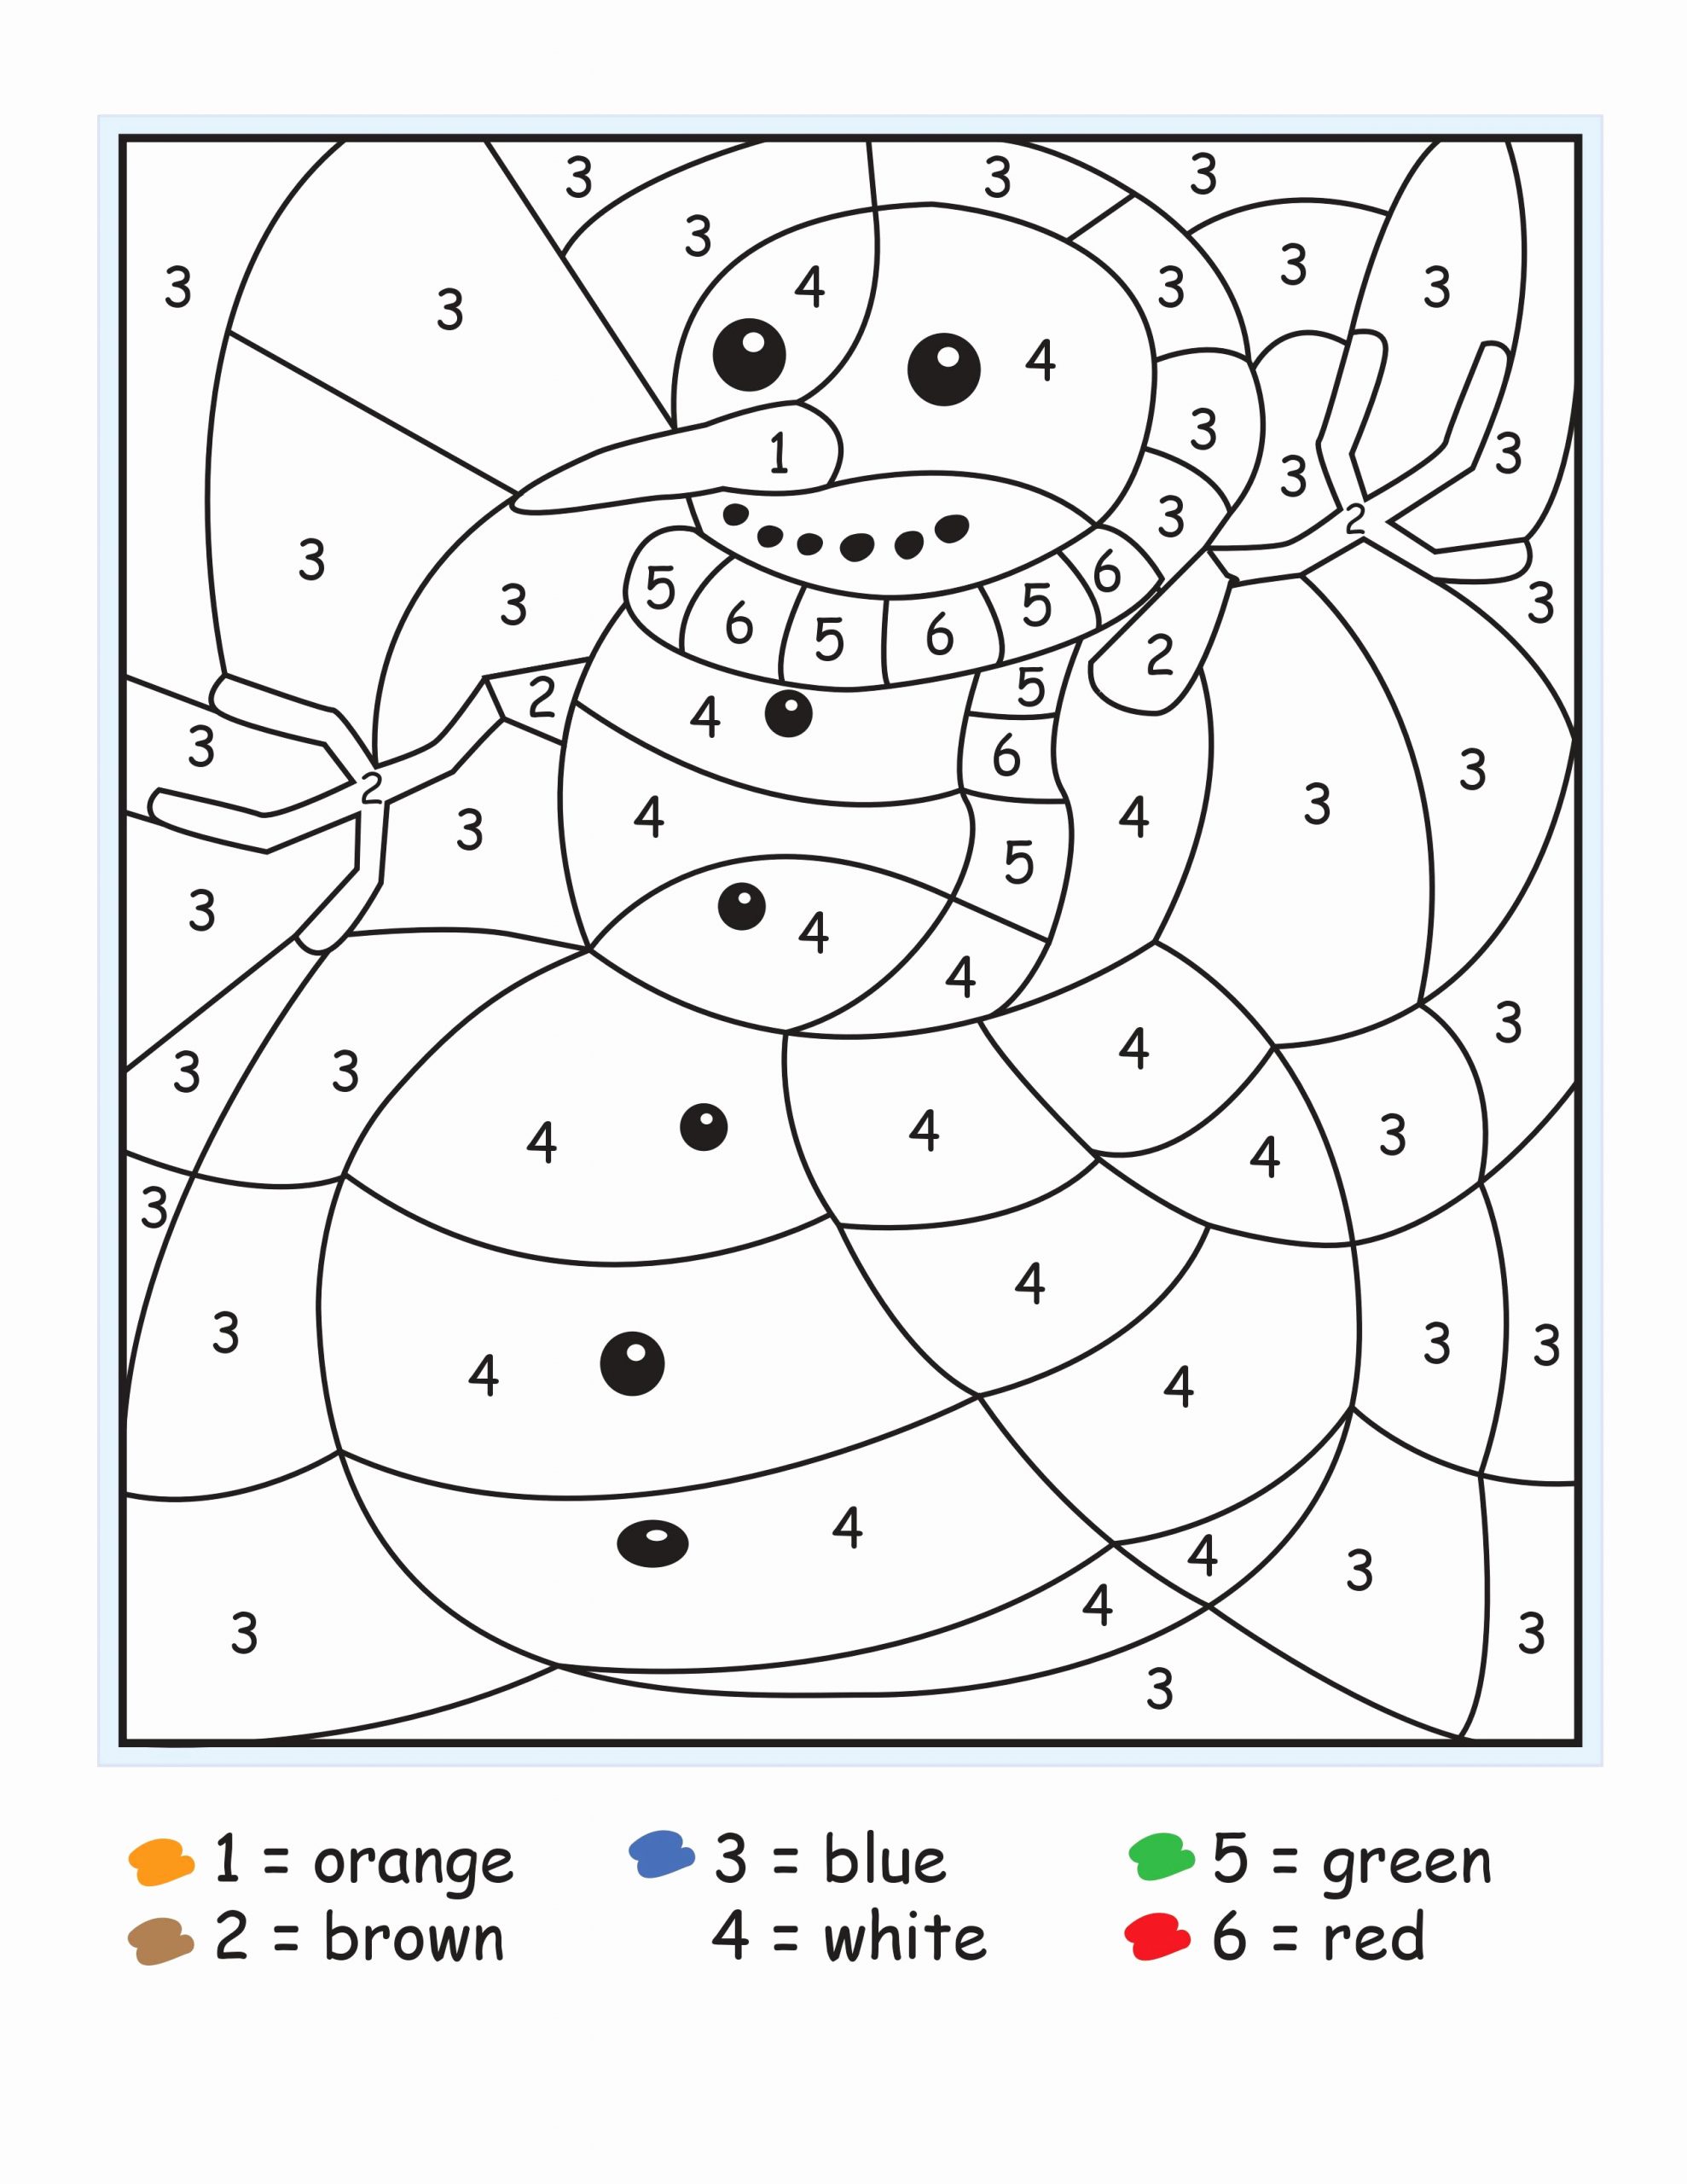 Kindergarten Color by Number Worksheets Elegant Easy Color by Number for Preschool and Kindergarten